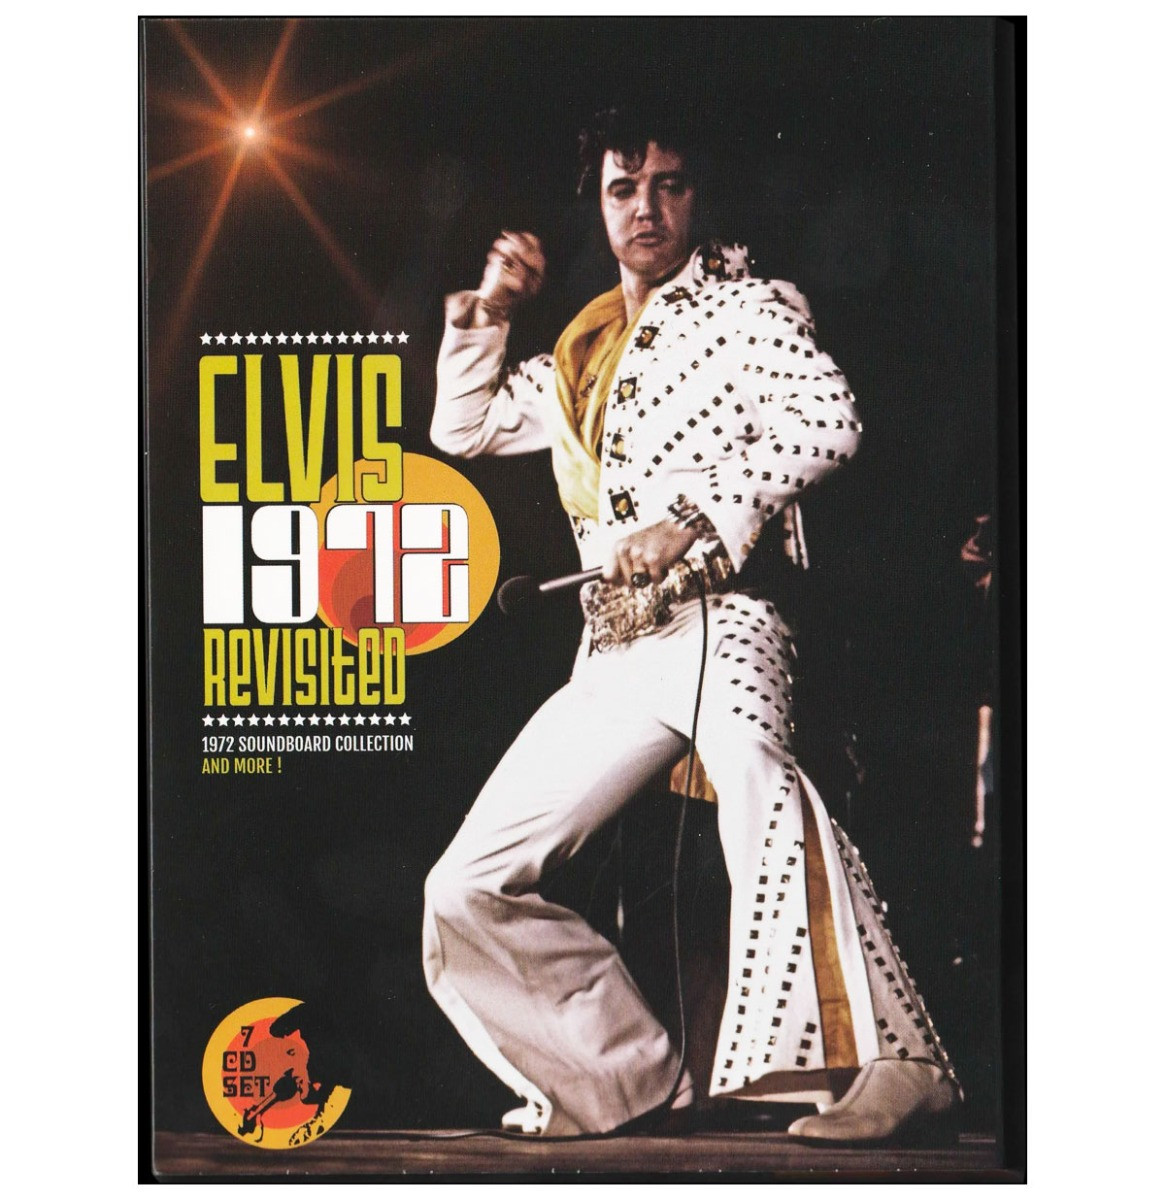 Elvis Presley - Elvis 1972 Revisited 7-CD 1972 Soundboard Collection